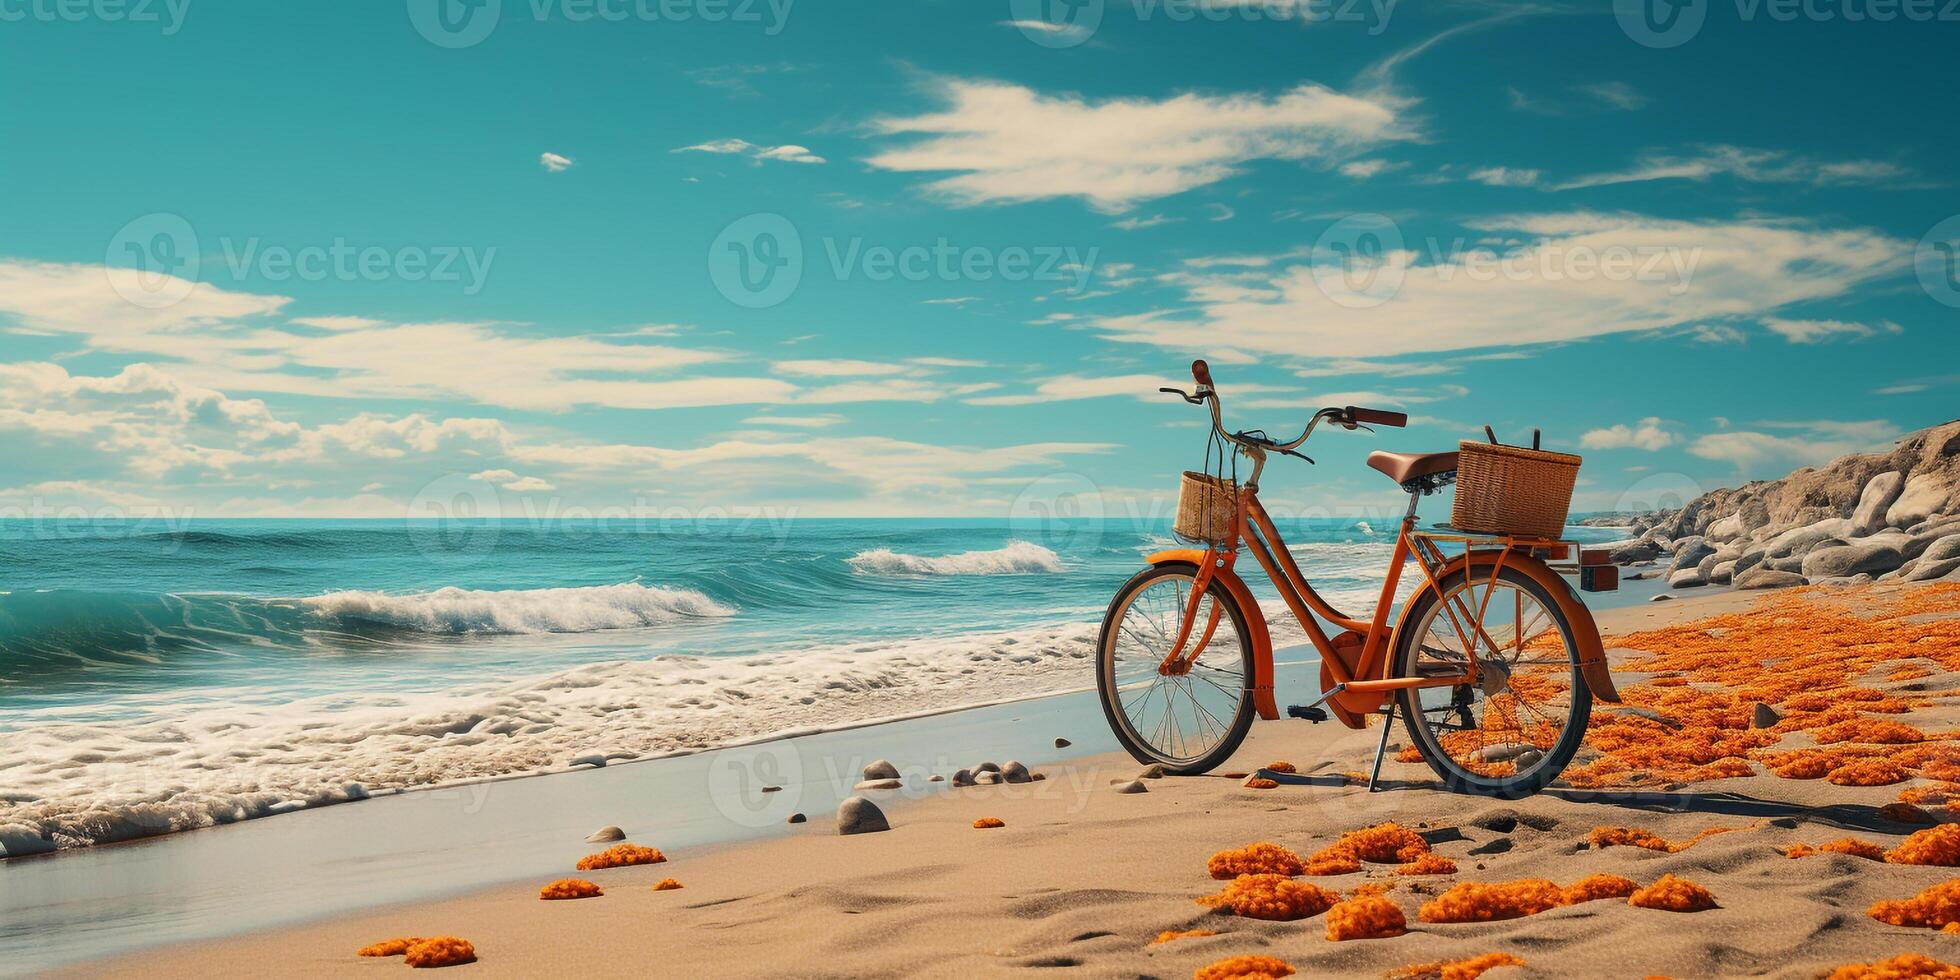 AI generated Bike on beach photo